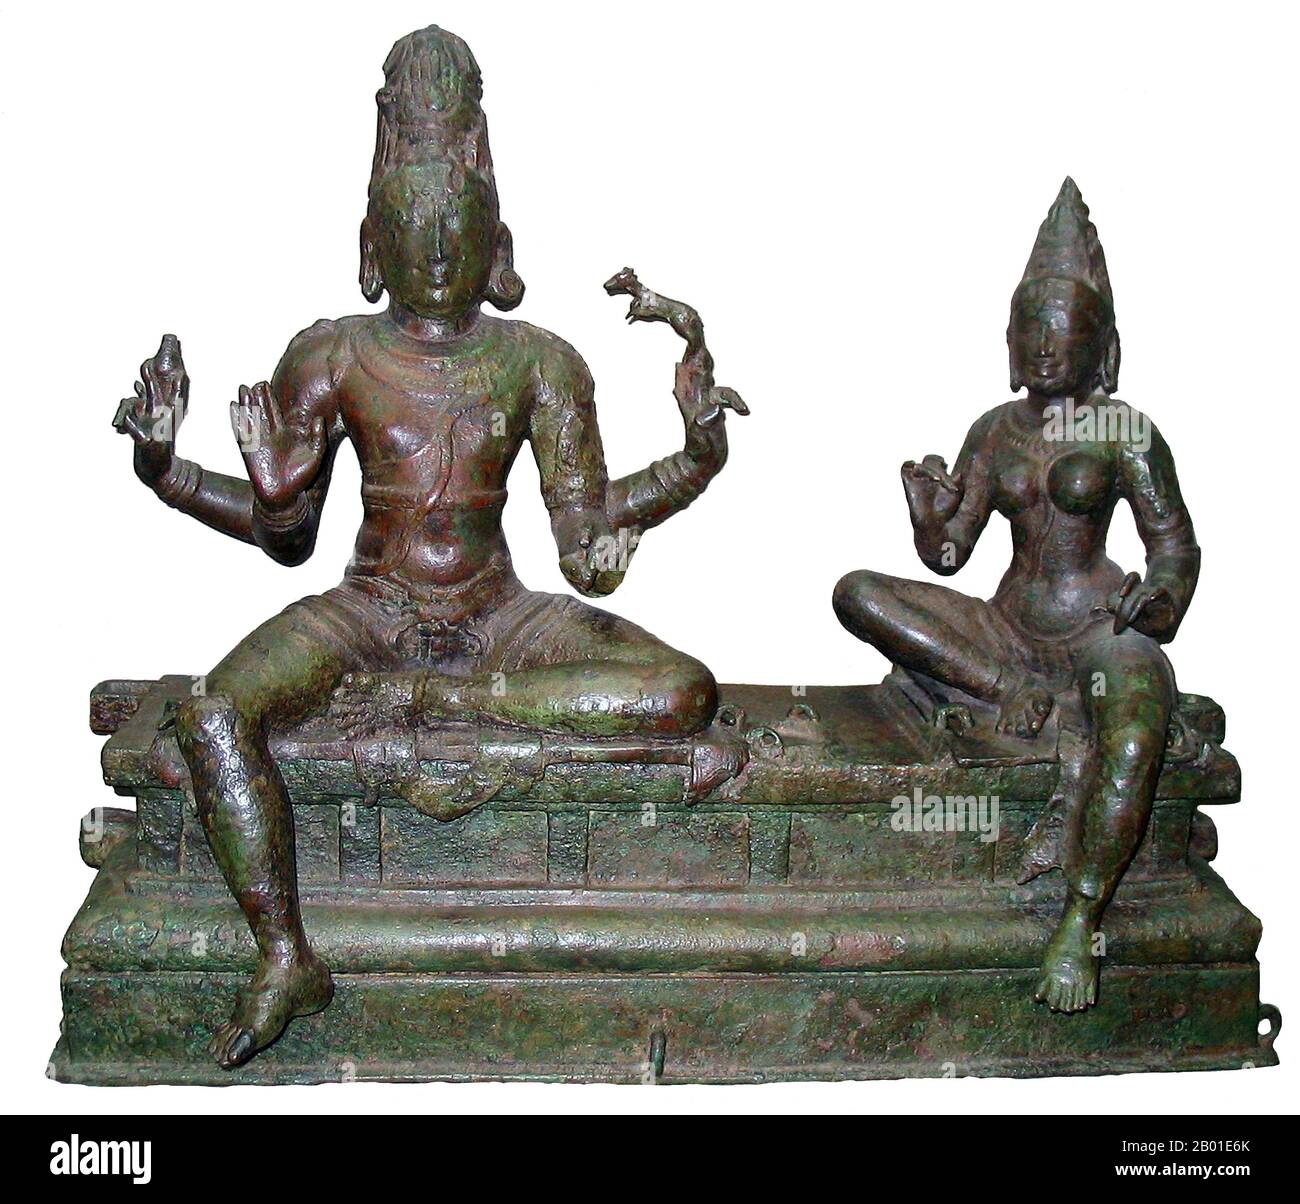 India: Somaskanda (Shiva e il suo consort Uma), India meridionale, Dinastia Chola, 12th ° secolo. Photo by Quadell (licenza CC BY-SA 3,0). Shiva (sanscrito: शिव Śiva, che significa 'aempicioso uno') è una grande divinità indù, ed è il dio distruttore o trasformatore tra i Trimurti, la Trinità indù degli aspetti primari del divino. Nella tradizione Shaiva dell'induismo, Shiva è visto come il Dio Supremo. Nella tradizione di Smarta, egli è considerato come una delle cinque forme primarie di Dio. I seguaci dell'induismo che concentrano il loro culto su Shiva sono chiamati Shaiviti o Shaivas (sanscrito Śaiva). Foto Stock